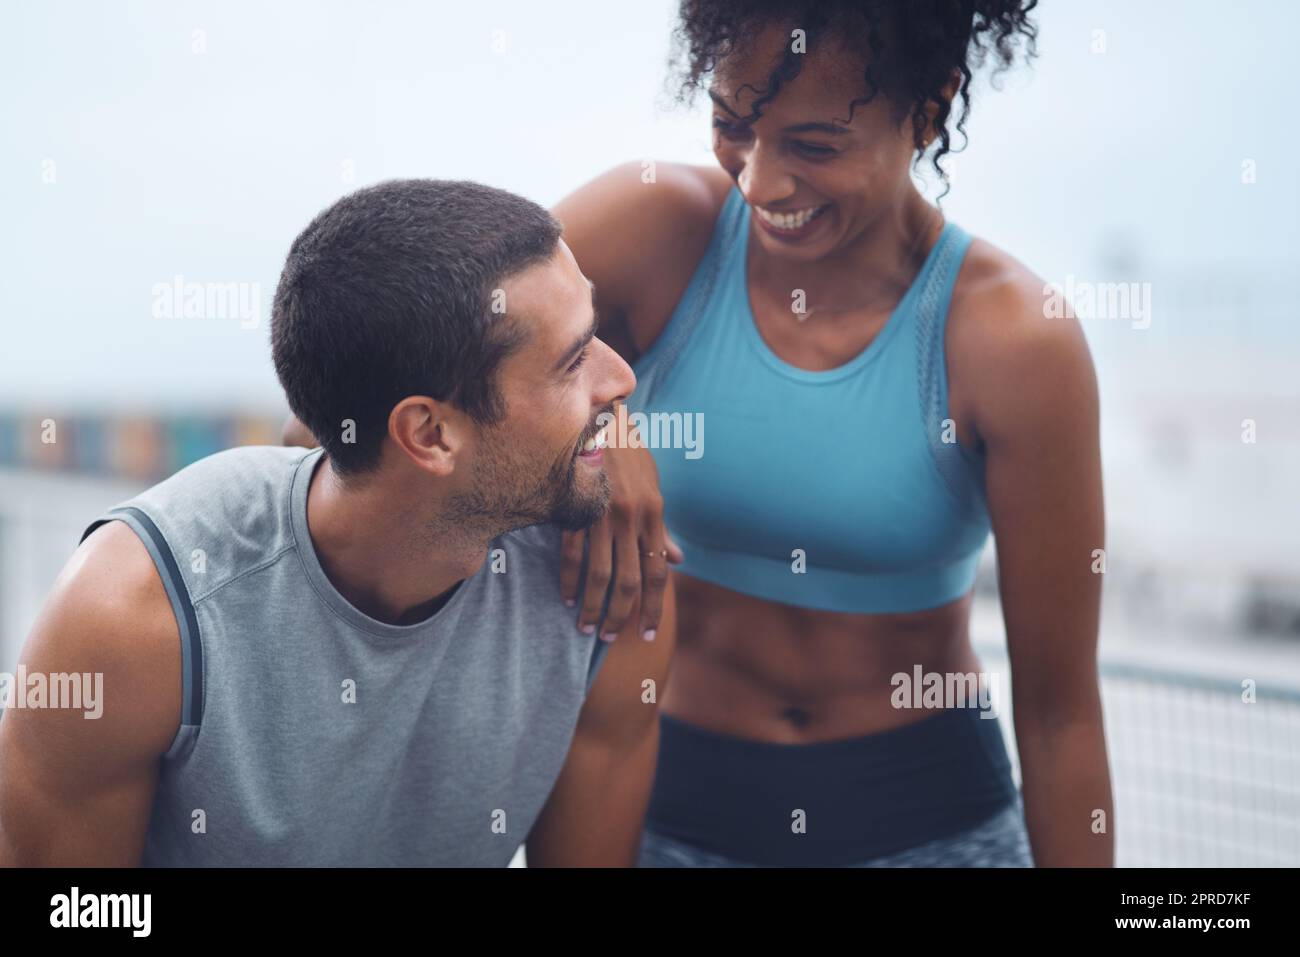 Dieser gesunde Lebensstil passt wirklich gut zu uns. Ein sportliches junges Paar, das beim Sport im Freien eine Pause macht. Stockfoto